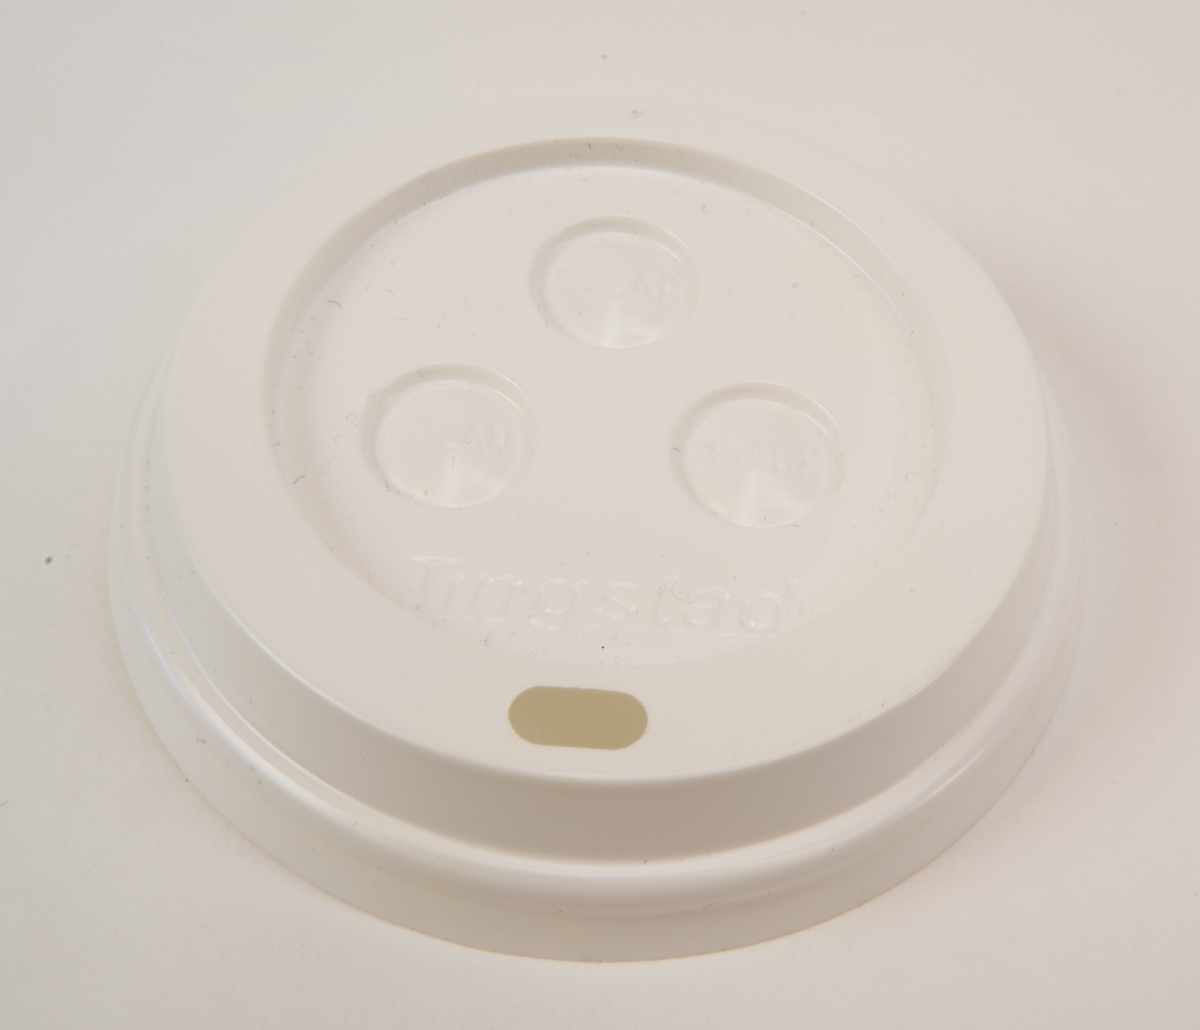 Pappersmugg för engångsbruk (:1), utvändigt röd med vitt rutmönster, med löstagbart vitt plastlock (:2). De vita ränderna som bildar rutmönstret är vågiga. På muggens ena sida står det "SJ BISTRO" och på andra sidan reklam för kaffemärket Arvid Nordquist Classic. På plastlocket finns tre stycken runda välvda "knappar" som går att aktivera för att ange om kaffet är koffeinfritt (decaf), innehåller mjölk eller grädde (cream) eller är svart (black). På locket finns även tillverkarens namn "Tingstad".